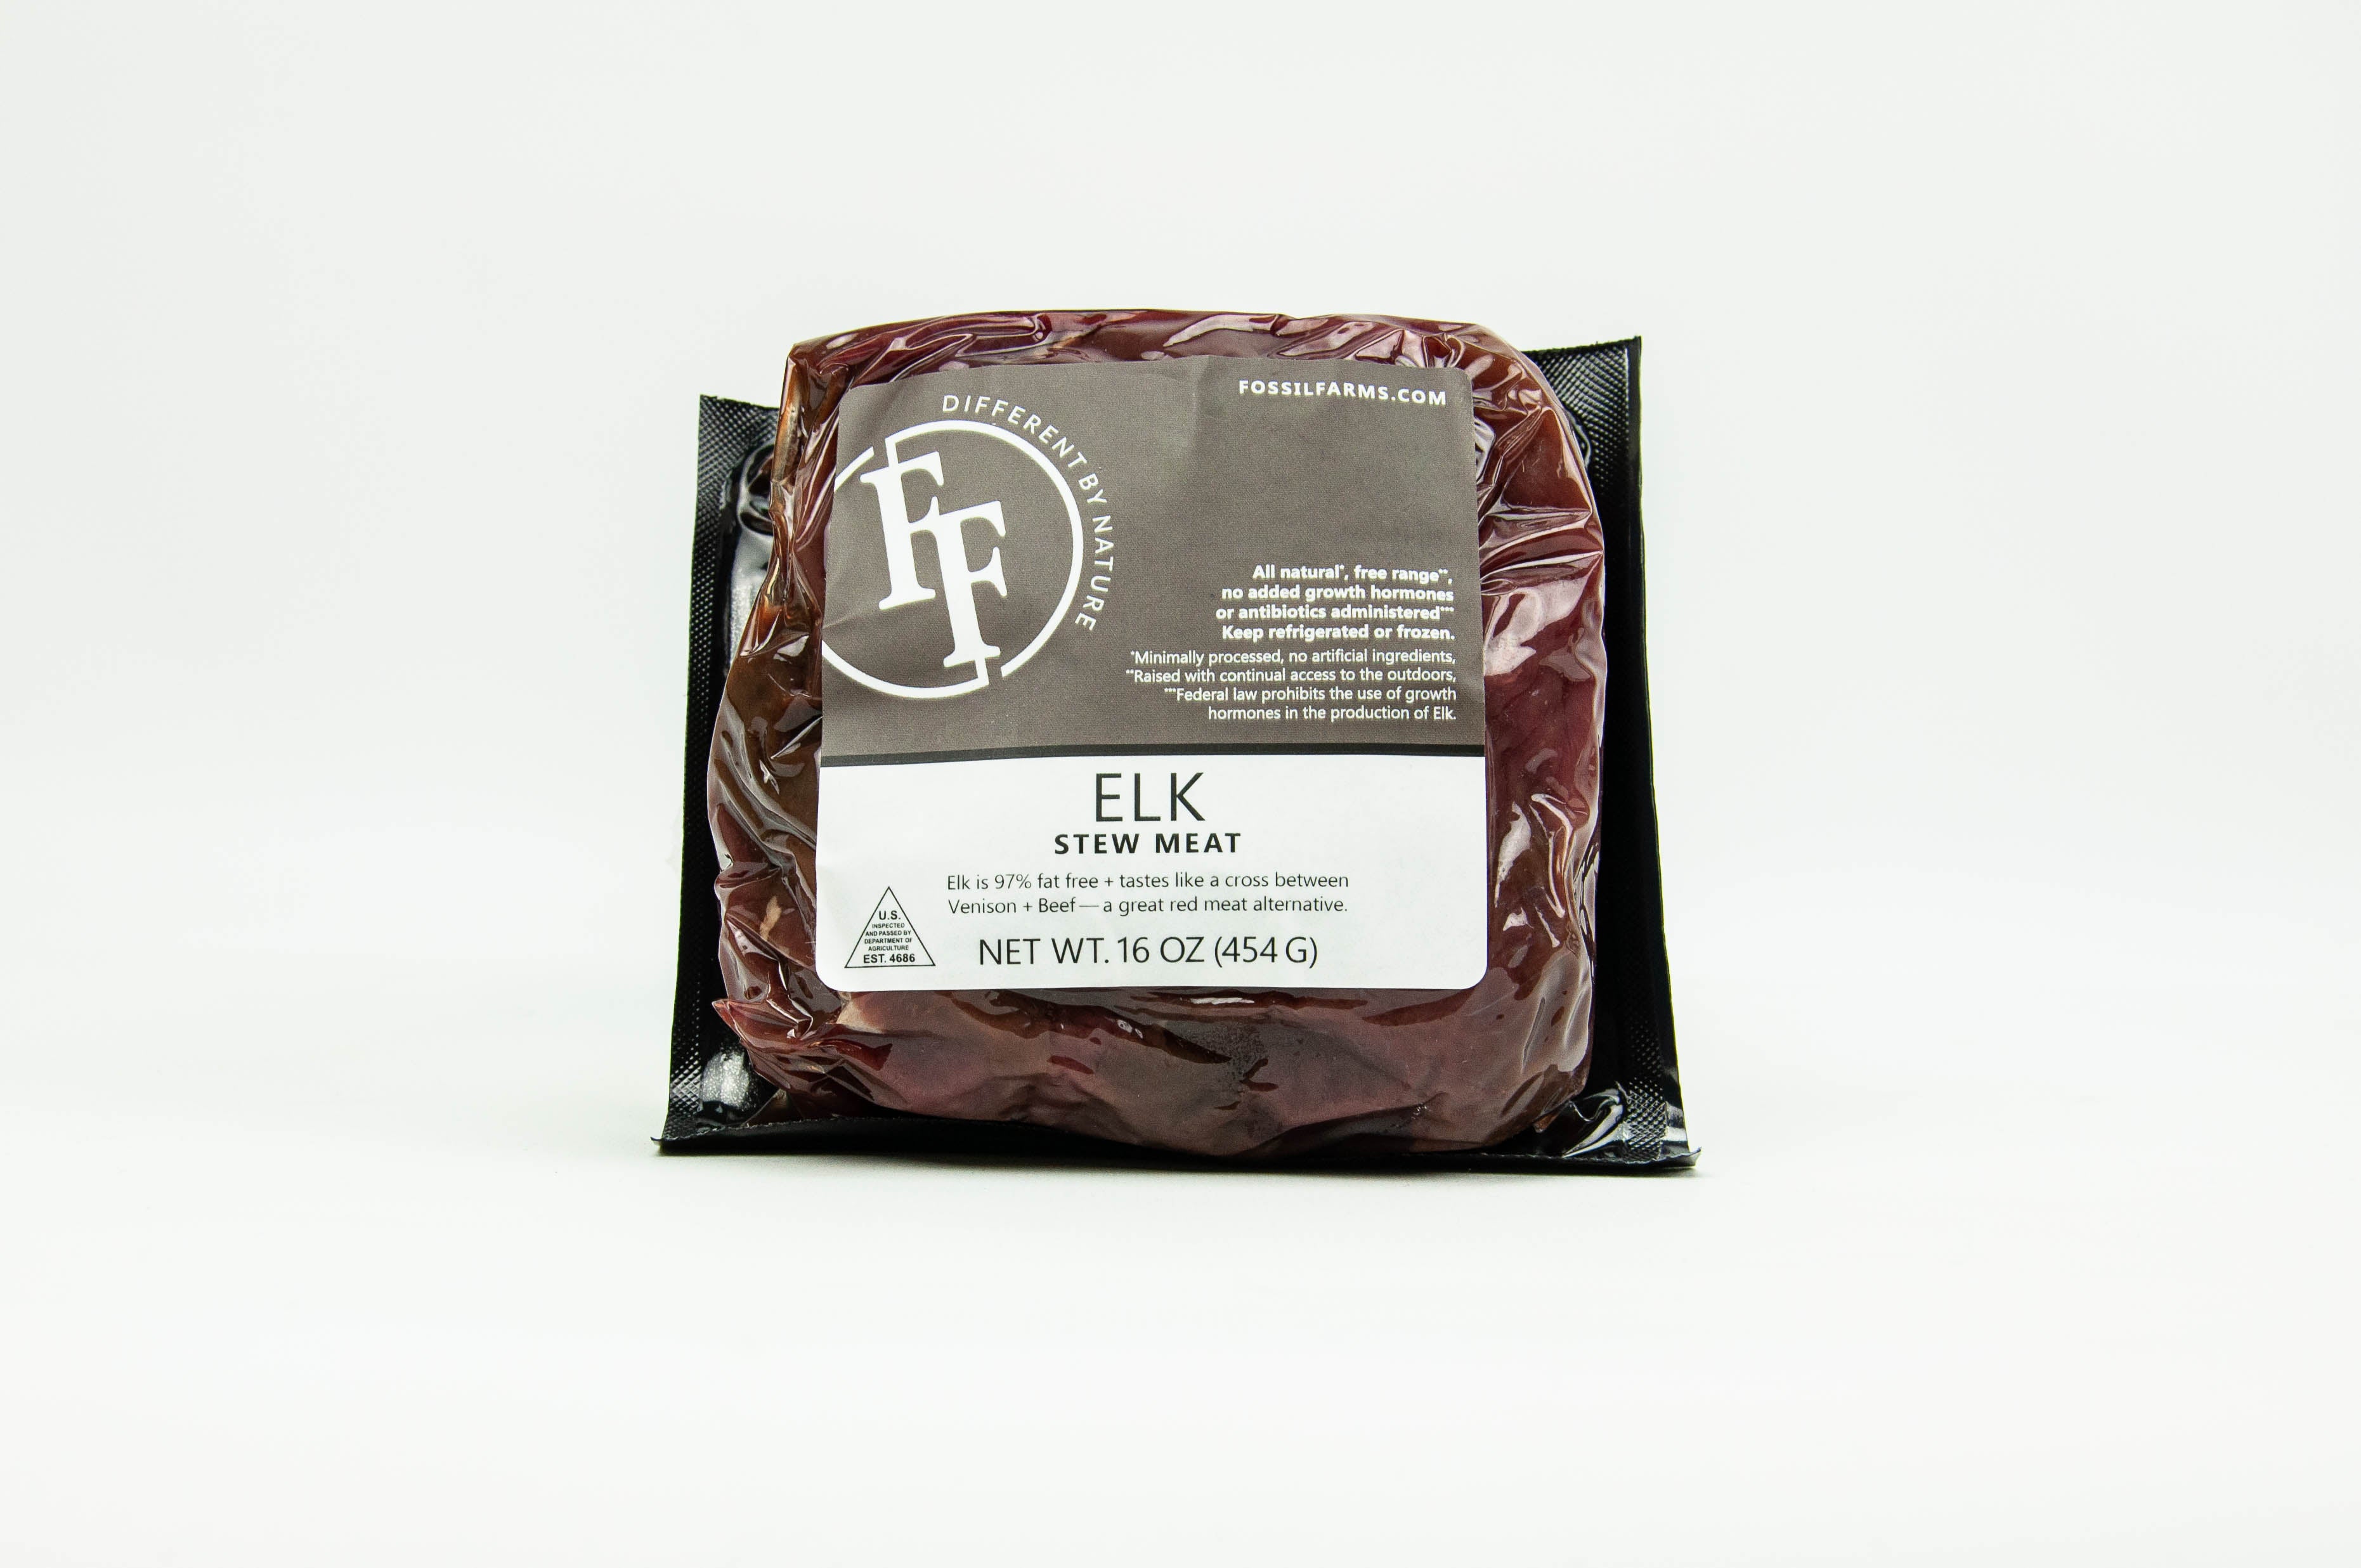 Elk Stew Meat Packaged